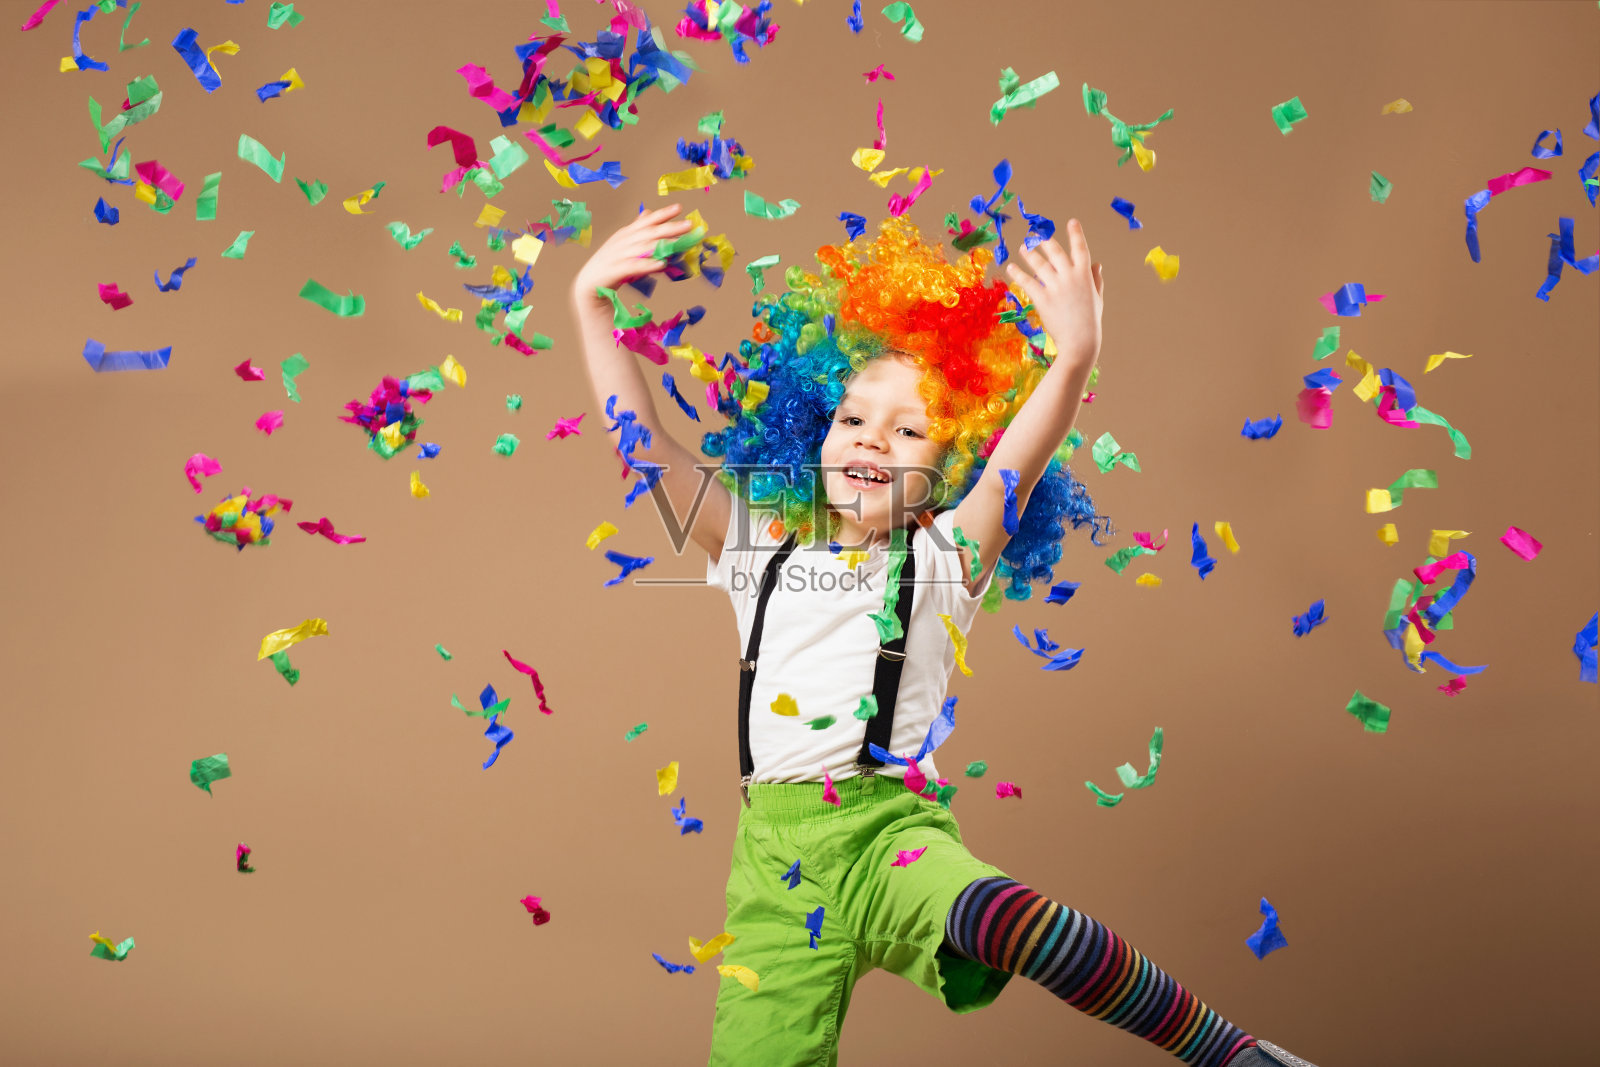 戴小丑假发的小男孩跳得很开心照片摄影图片